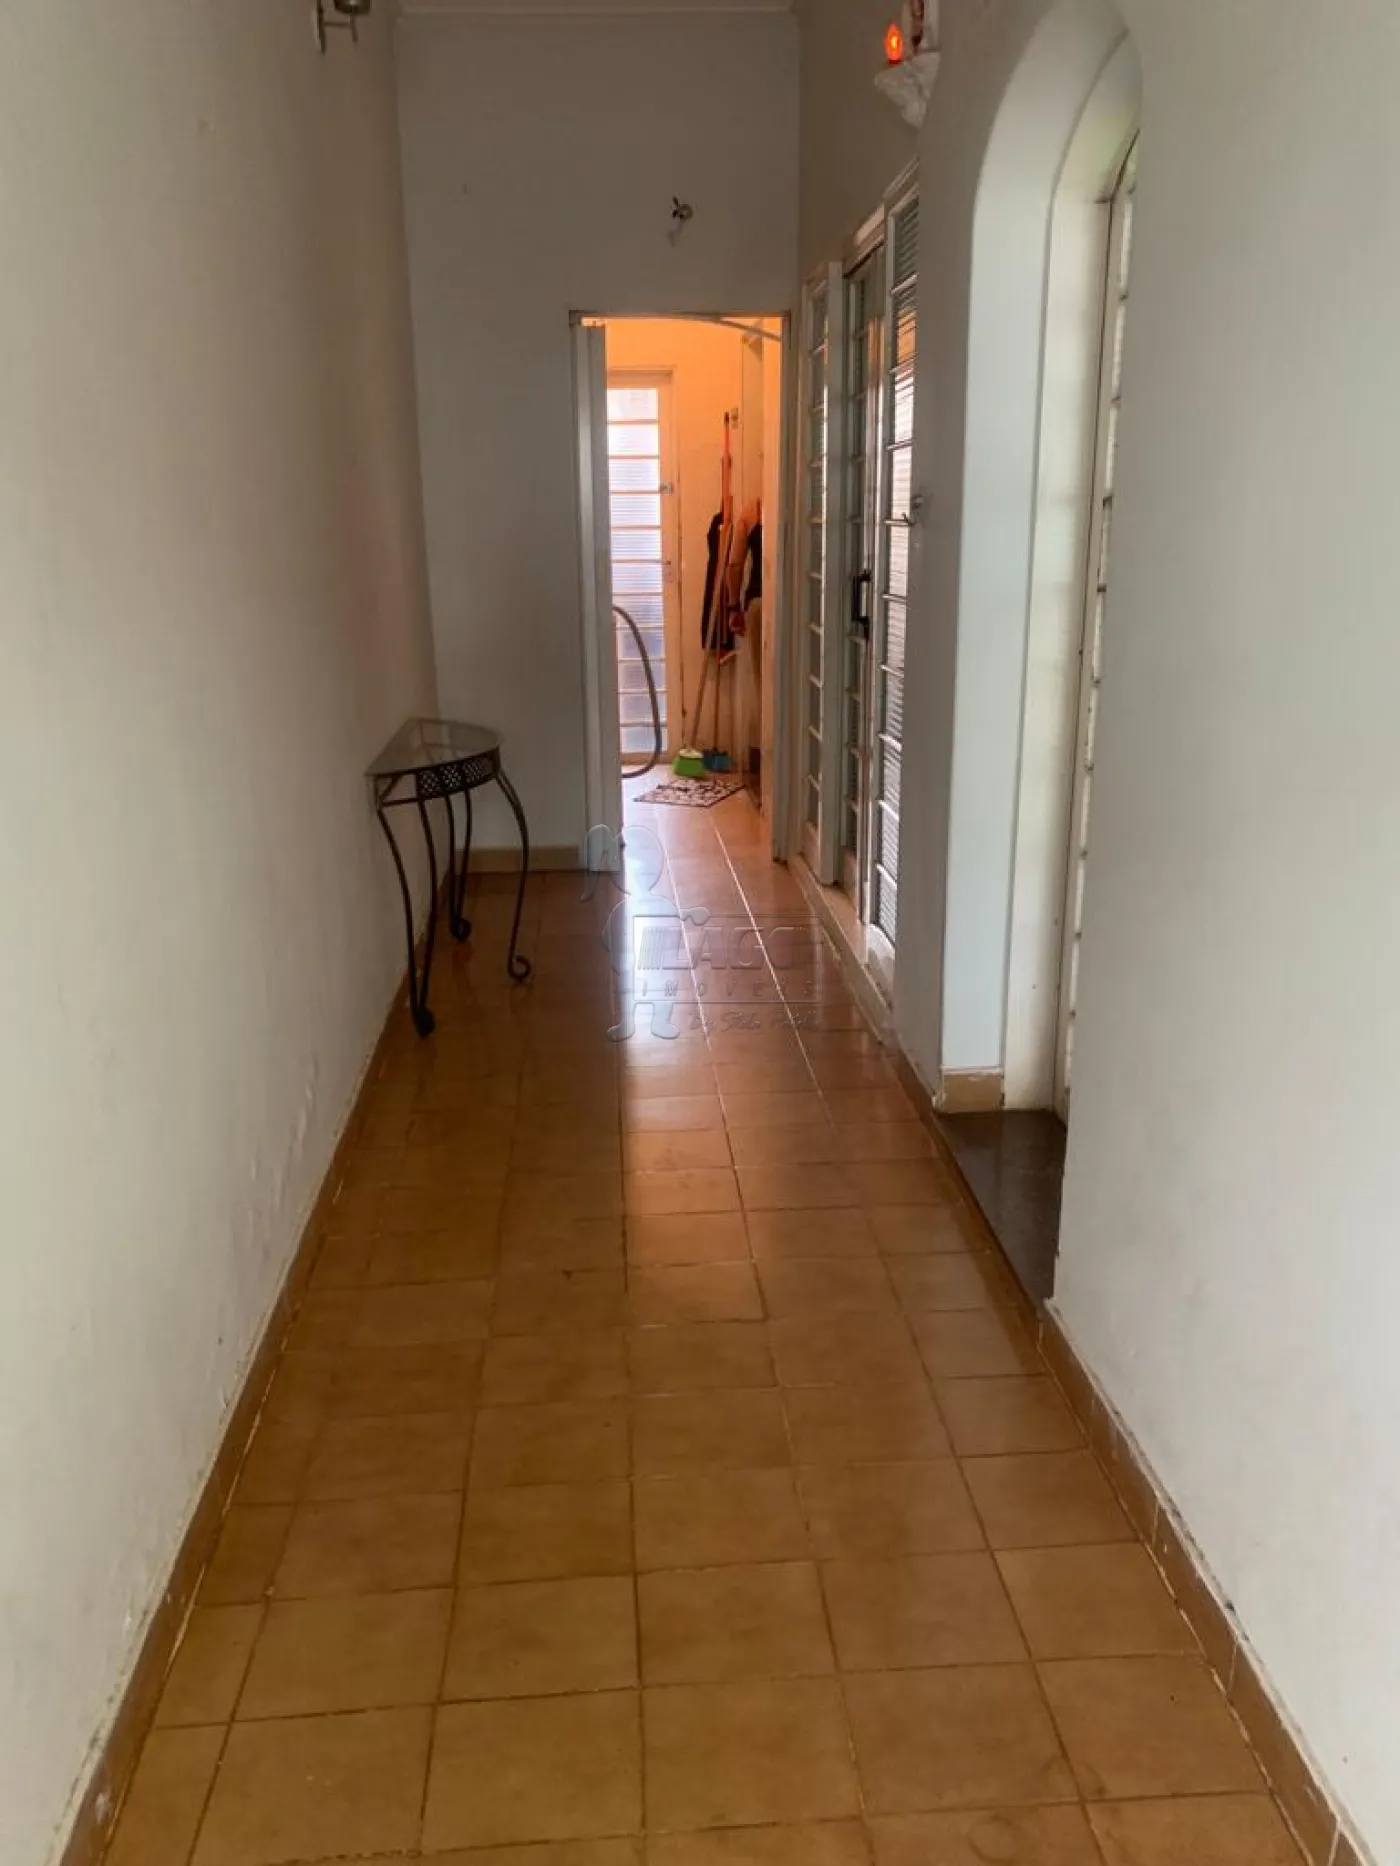 Comprar Casas / Padrão em Ribeirão Preto R$ 260.000,00 - Foto 8